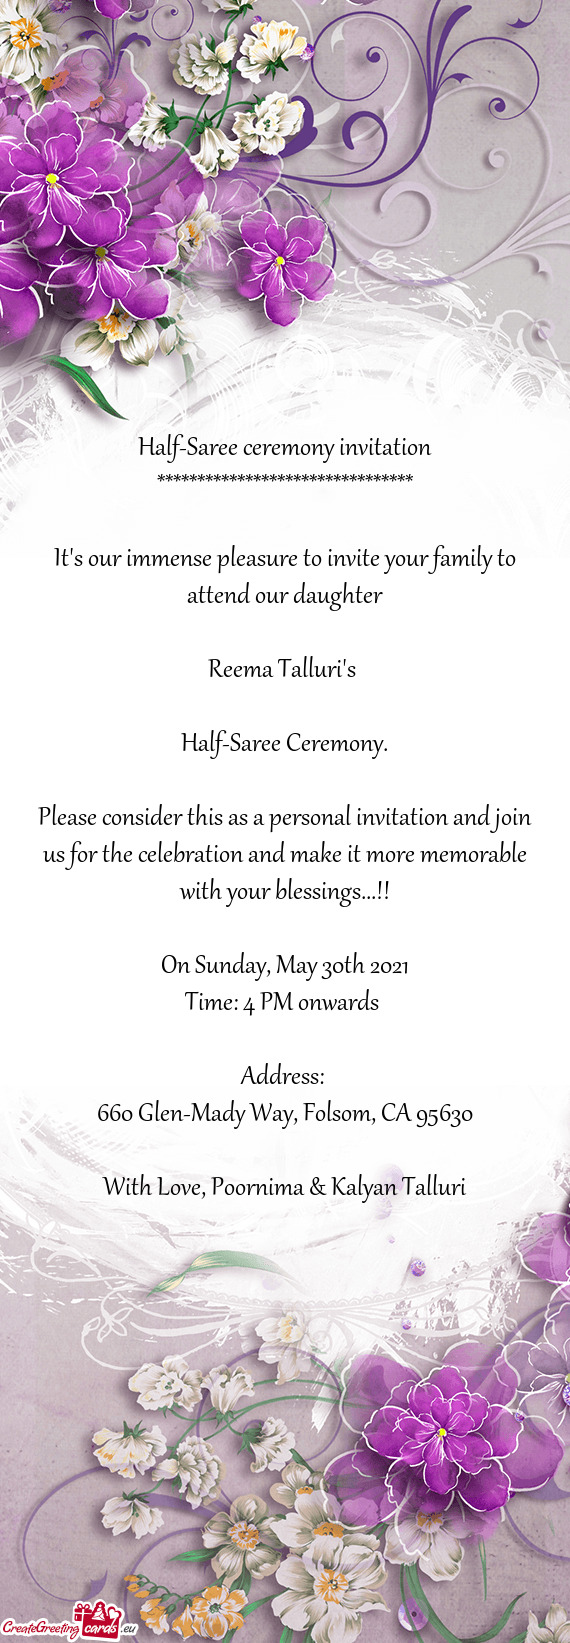 Half-Saree ceremony invitation